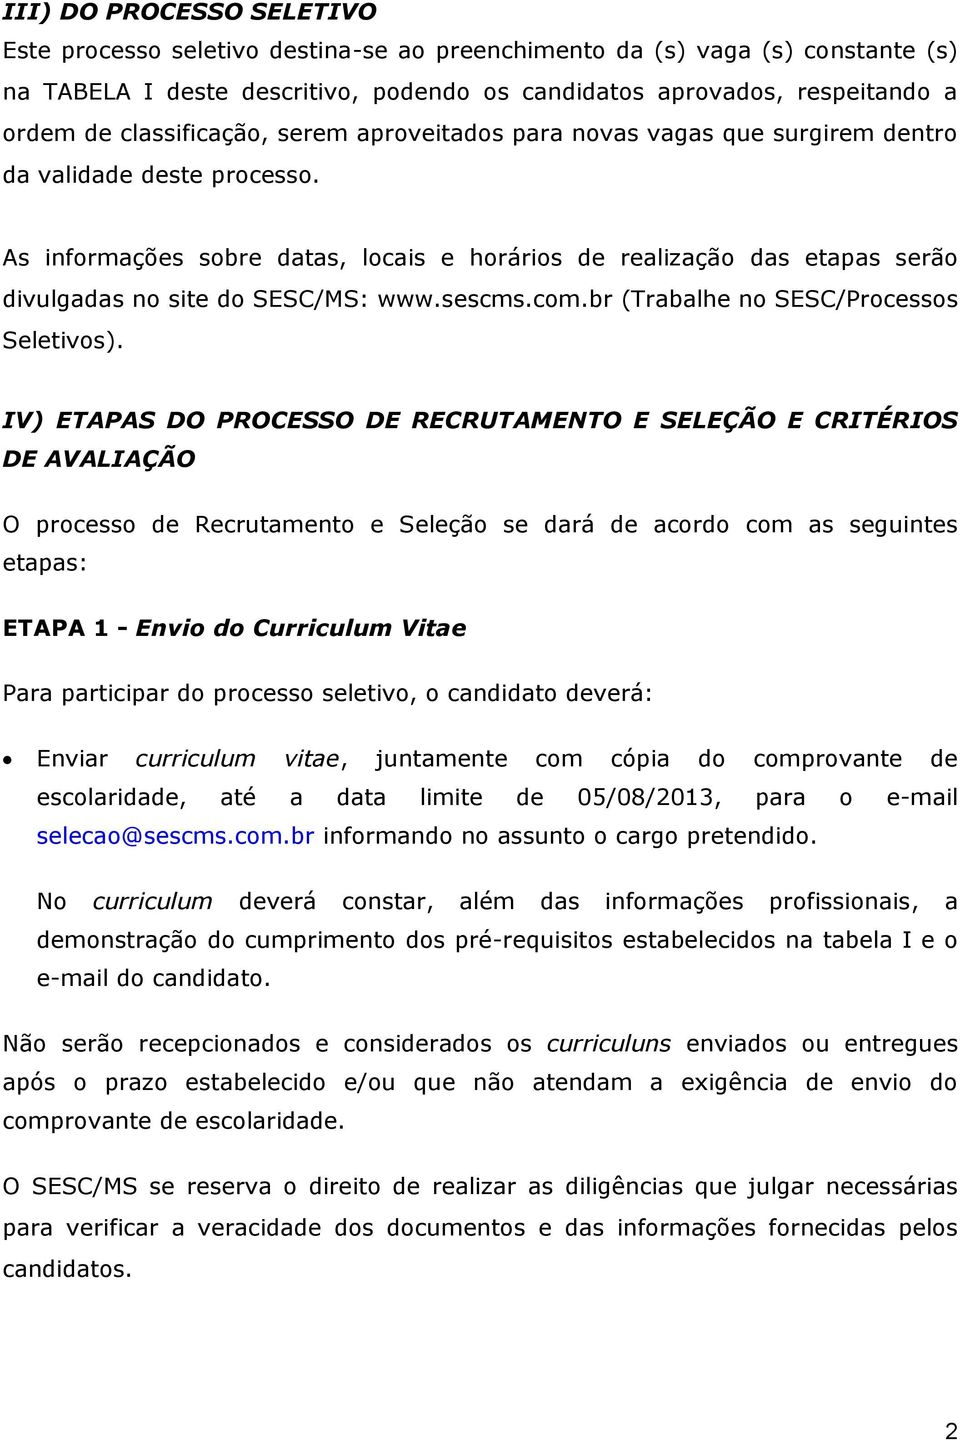 As informações sobre datas, locais e horários de realização das etapas serão divulgadas no site do SESC/MS: www.sescms.com.br (Trabalhe no SESC/Processos Seletivos).